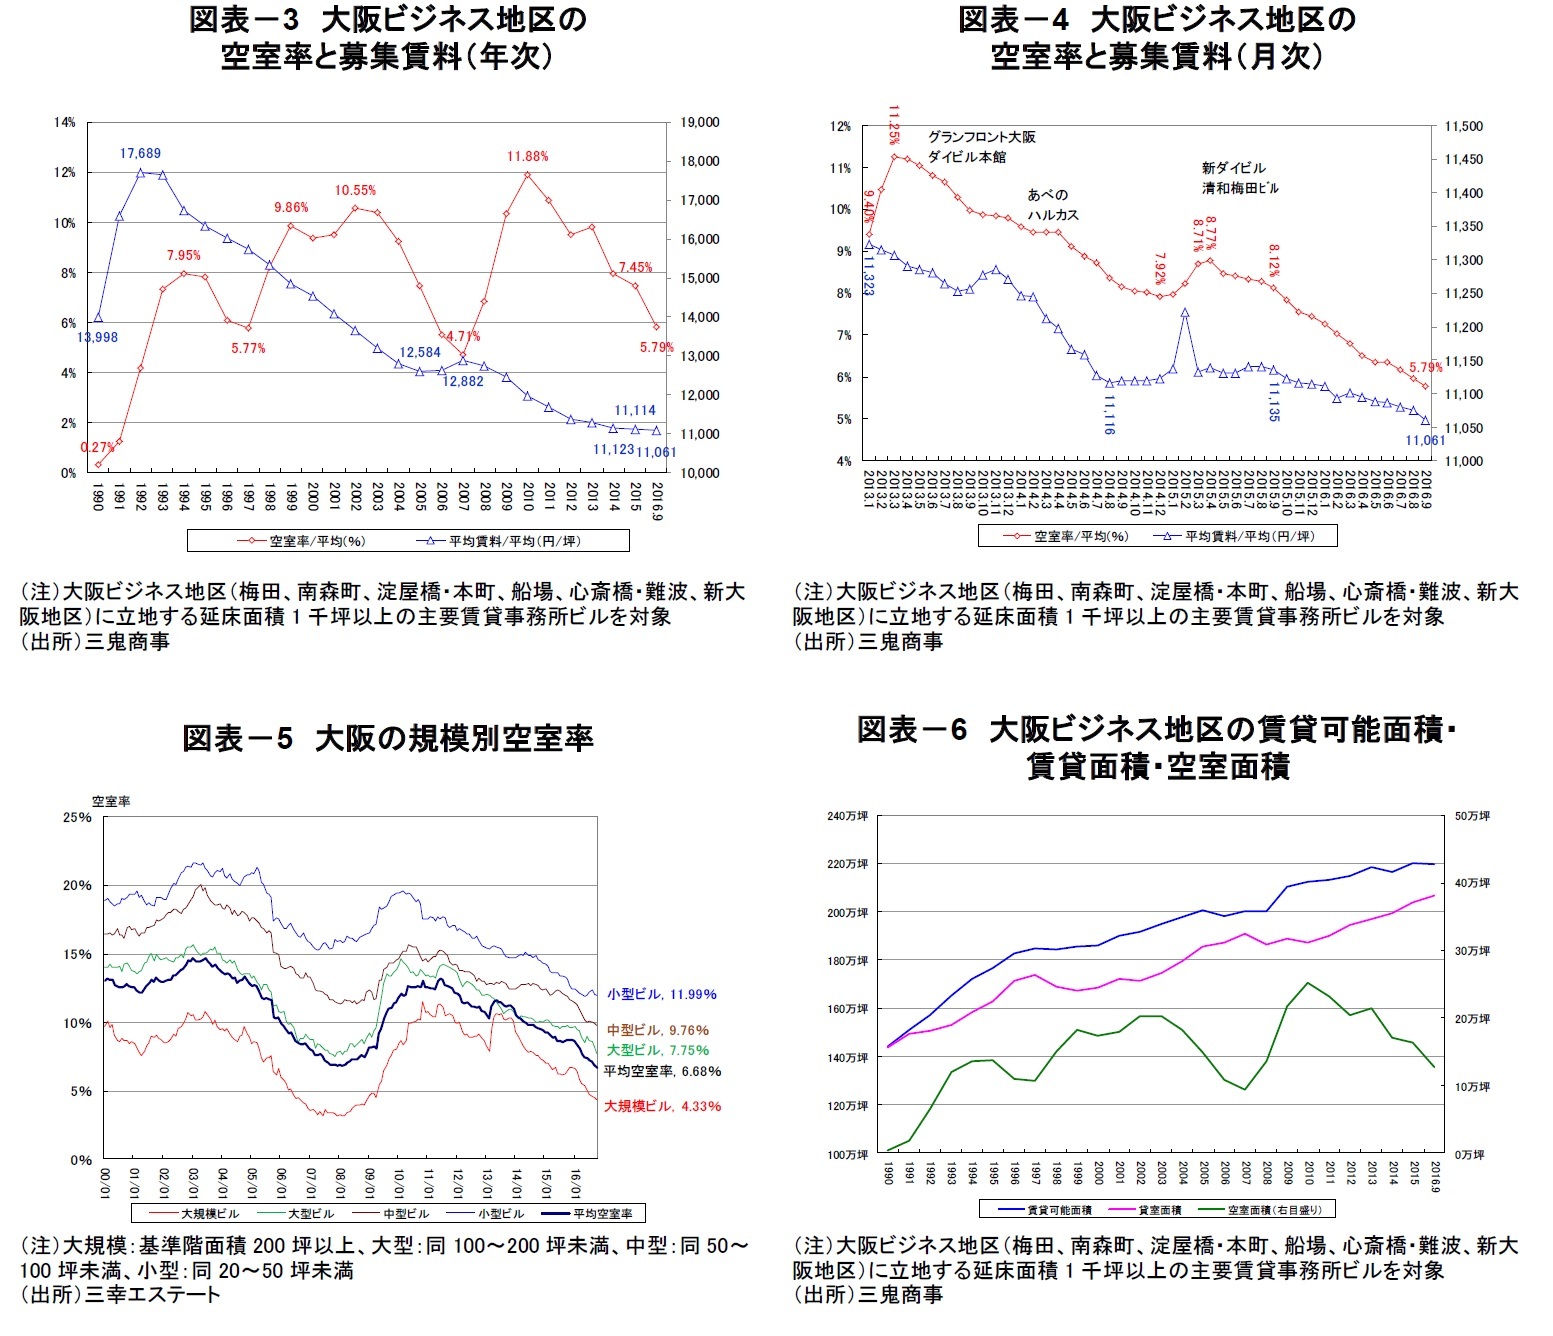 図表－3　大阪ビジネス地区の空室率と募集賃料（年次）/図表－4　大阪ビジネス地区の空室率と募集賃料（月次）/図表－5　大阪の規模別空室率/図表－6　大阪ビジネス地区の賃貸可能面積・賃貸面積・空室面積